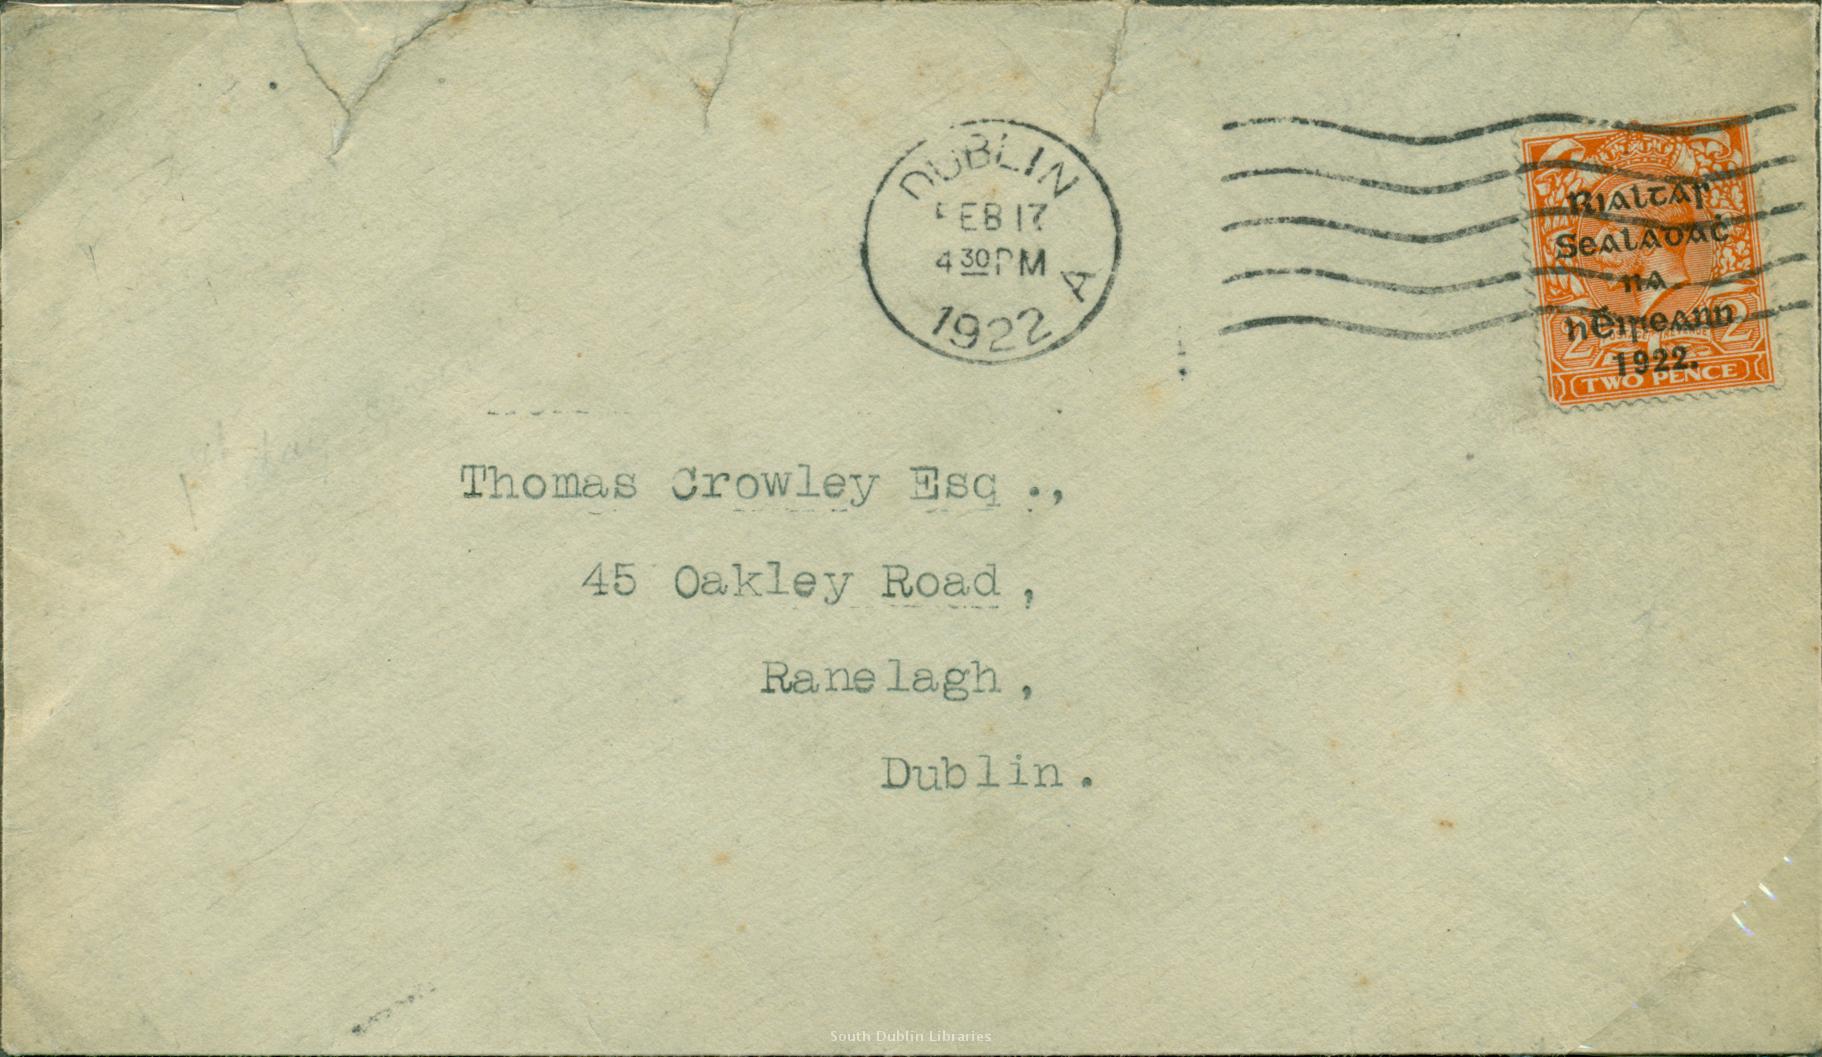 Postmark date